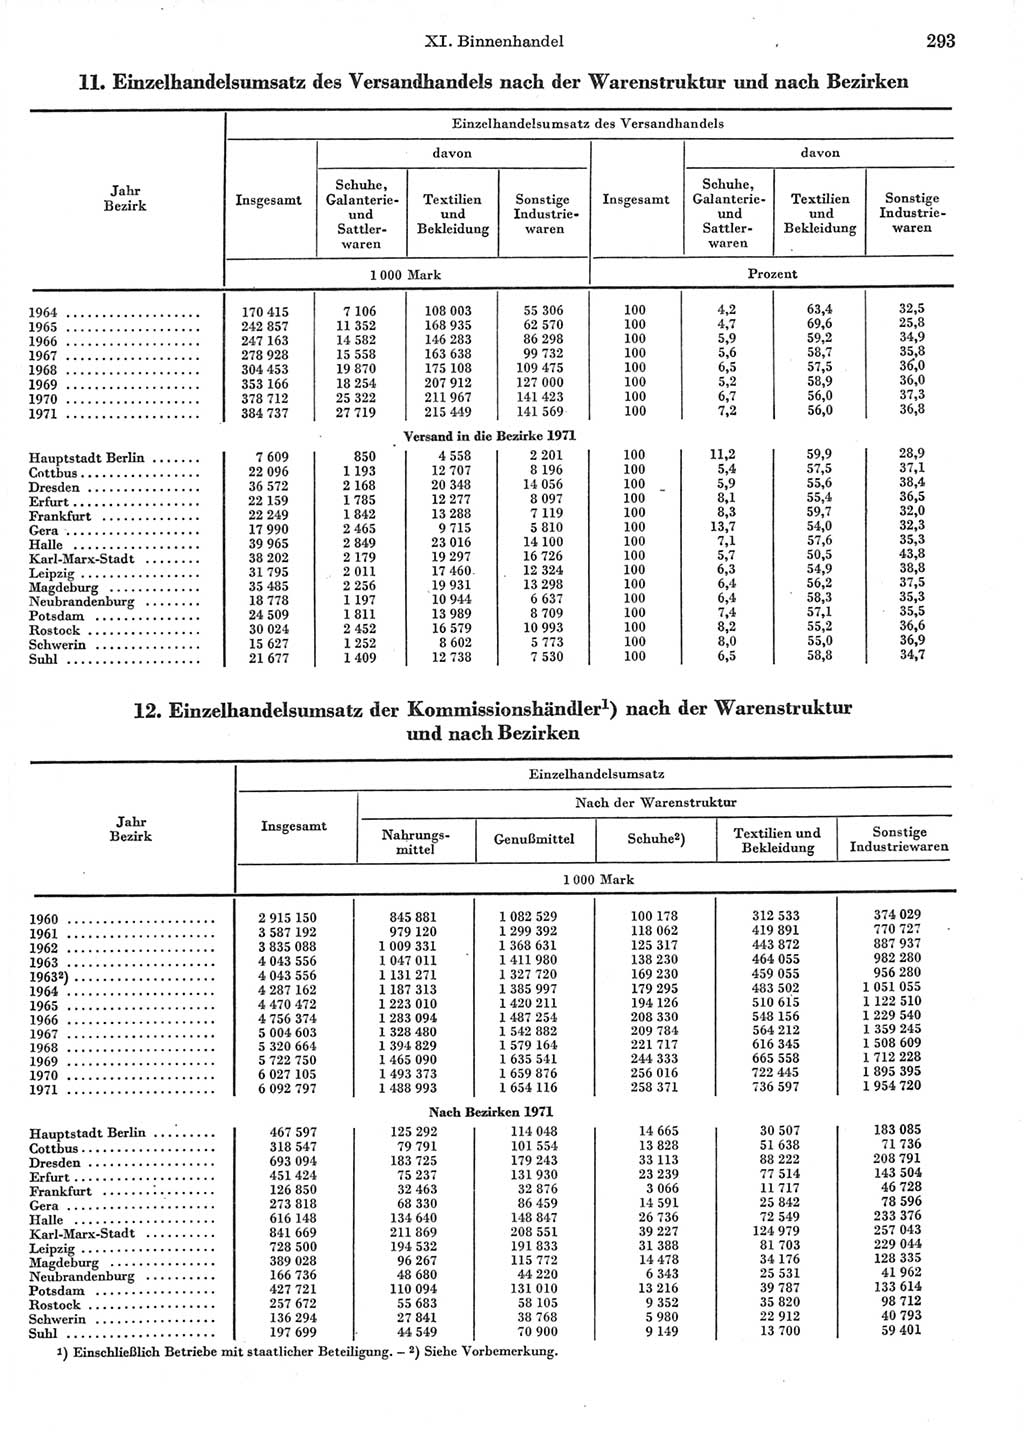 Statistisches Jahrbuch der Deutschen Demokratischen Republik (DDR) 1972, Seite 293 (Stat. Jb. DDR 1972, S. 293)